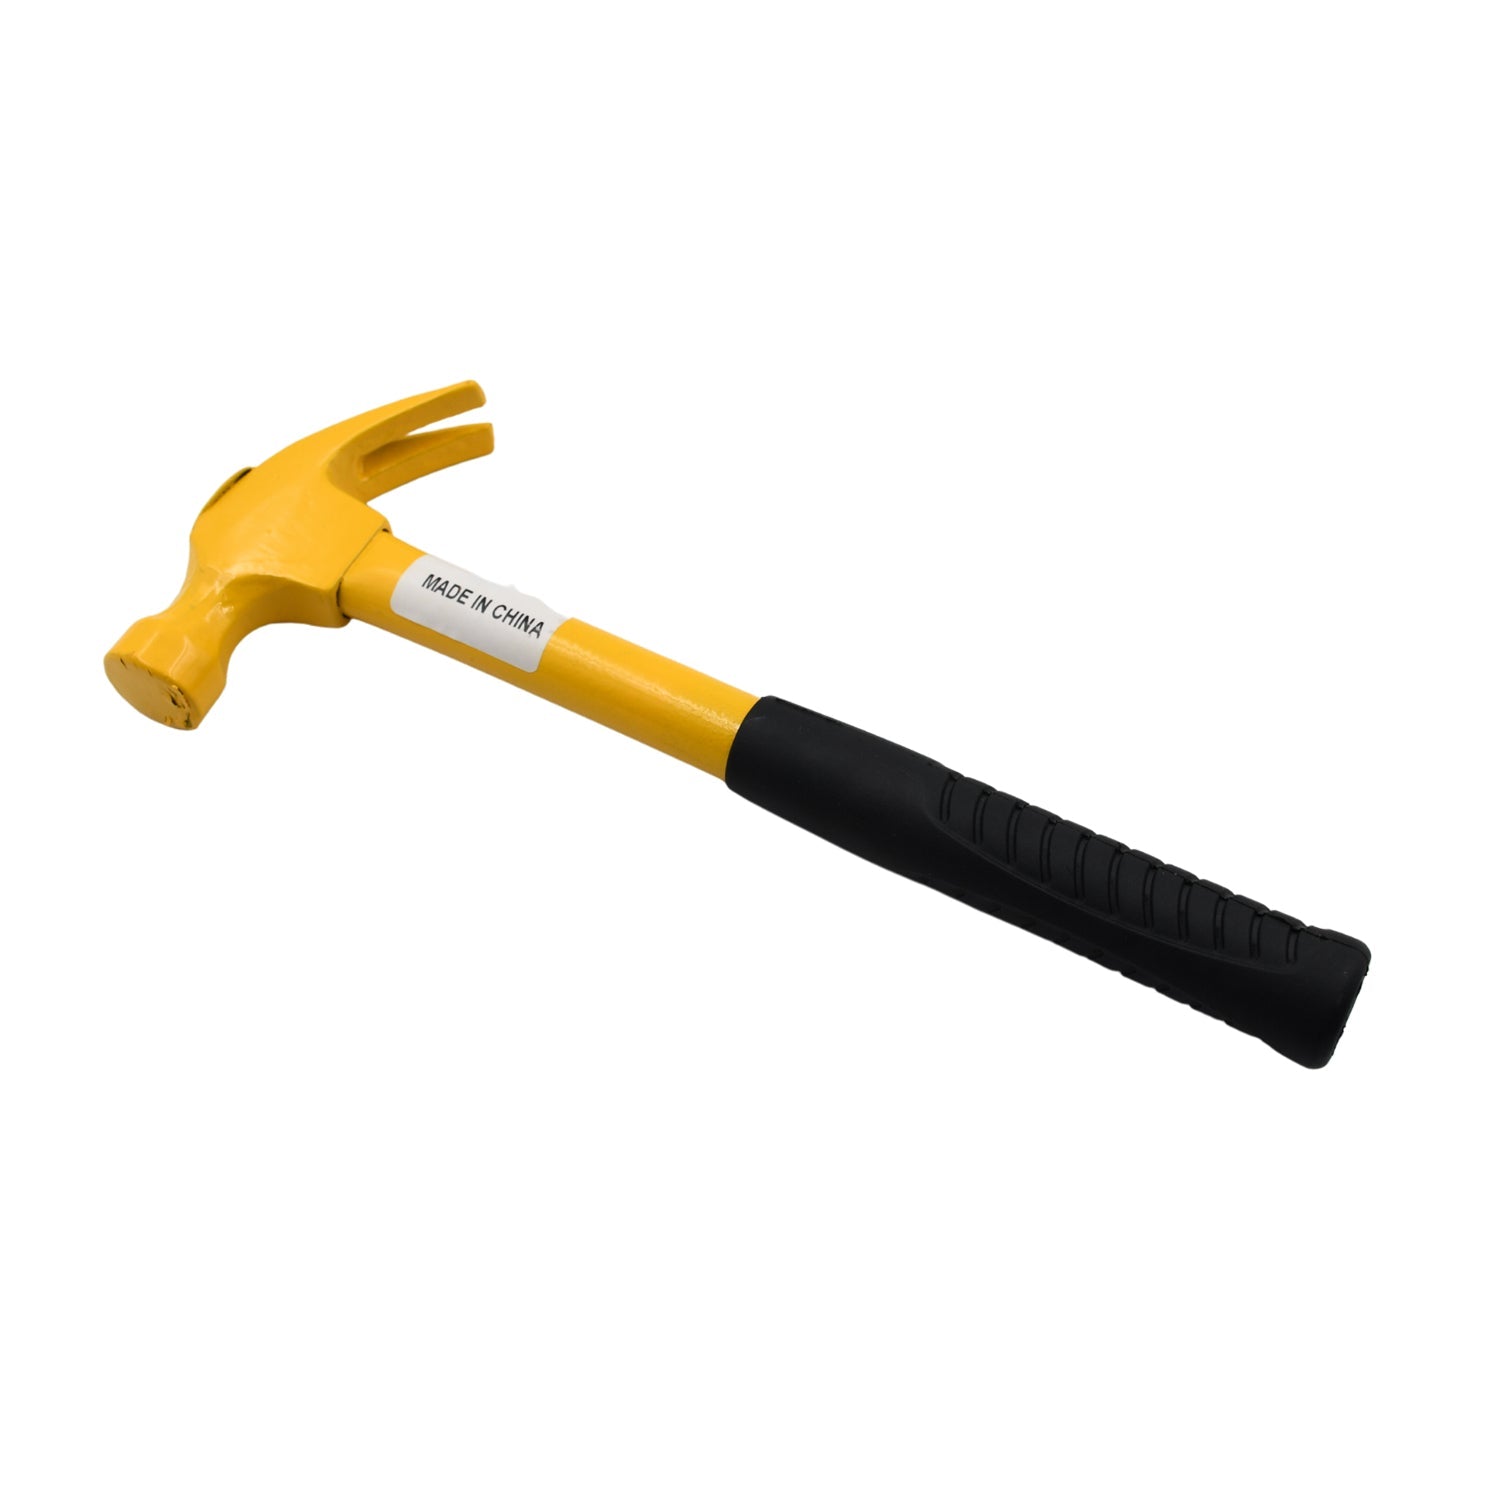 0573a Heavy Duty Mini Stubby Claw Nail Hammer Hand Tool 27cm (370Gm)